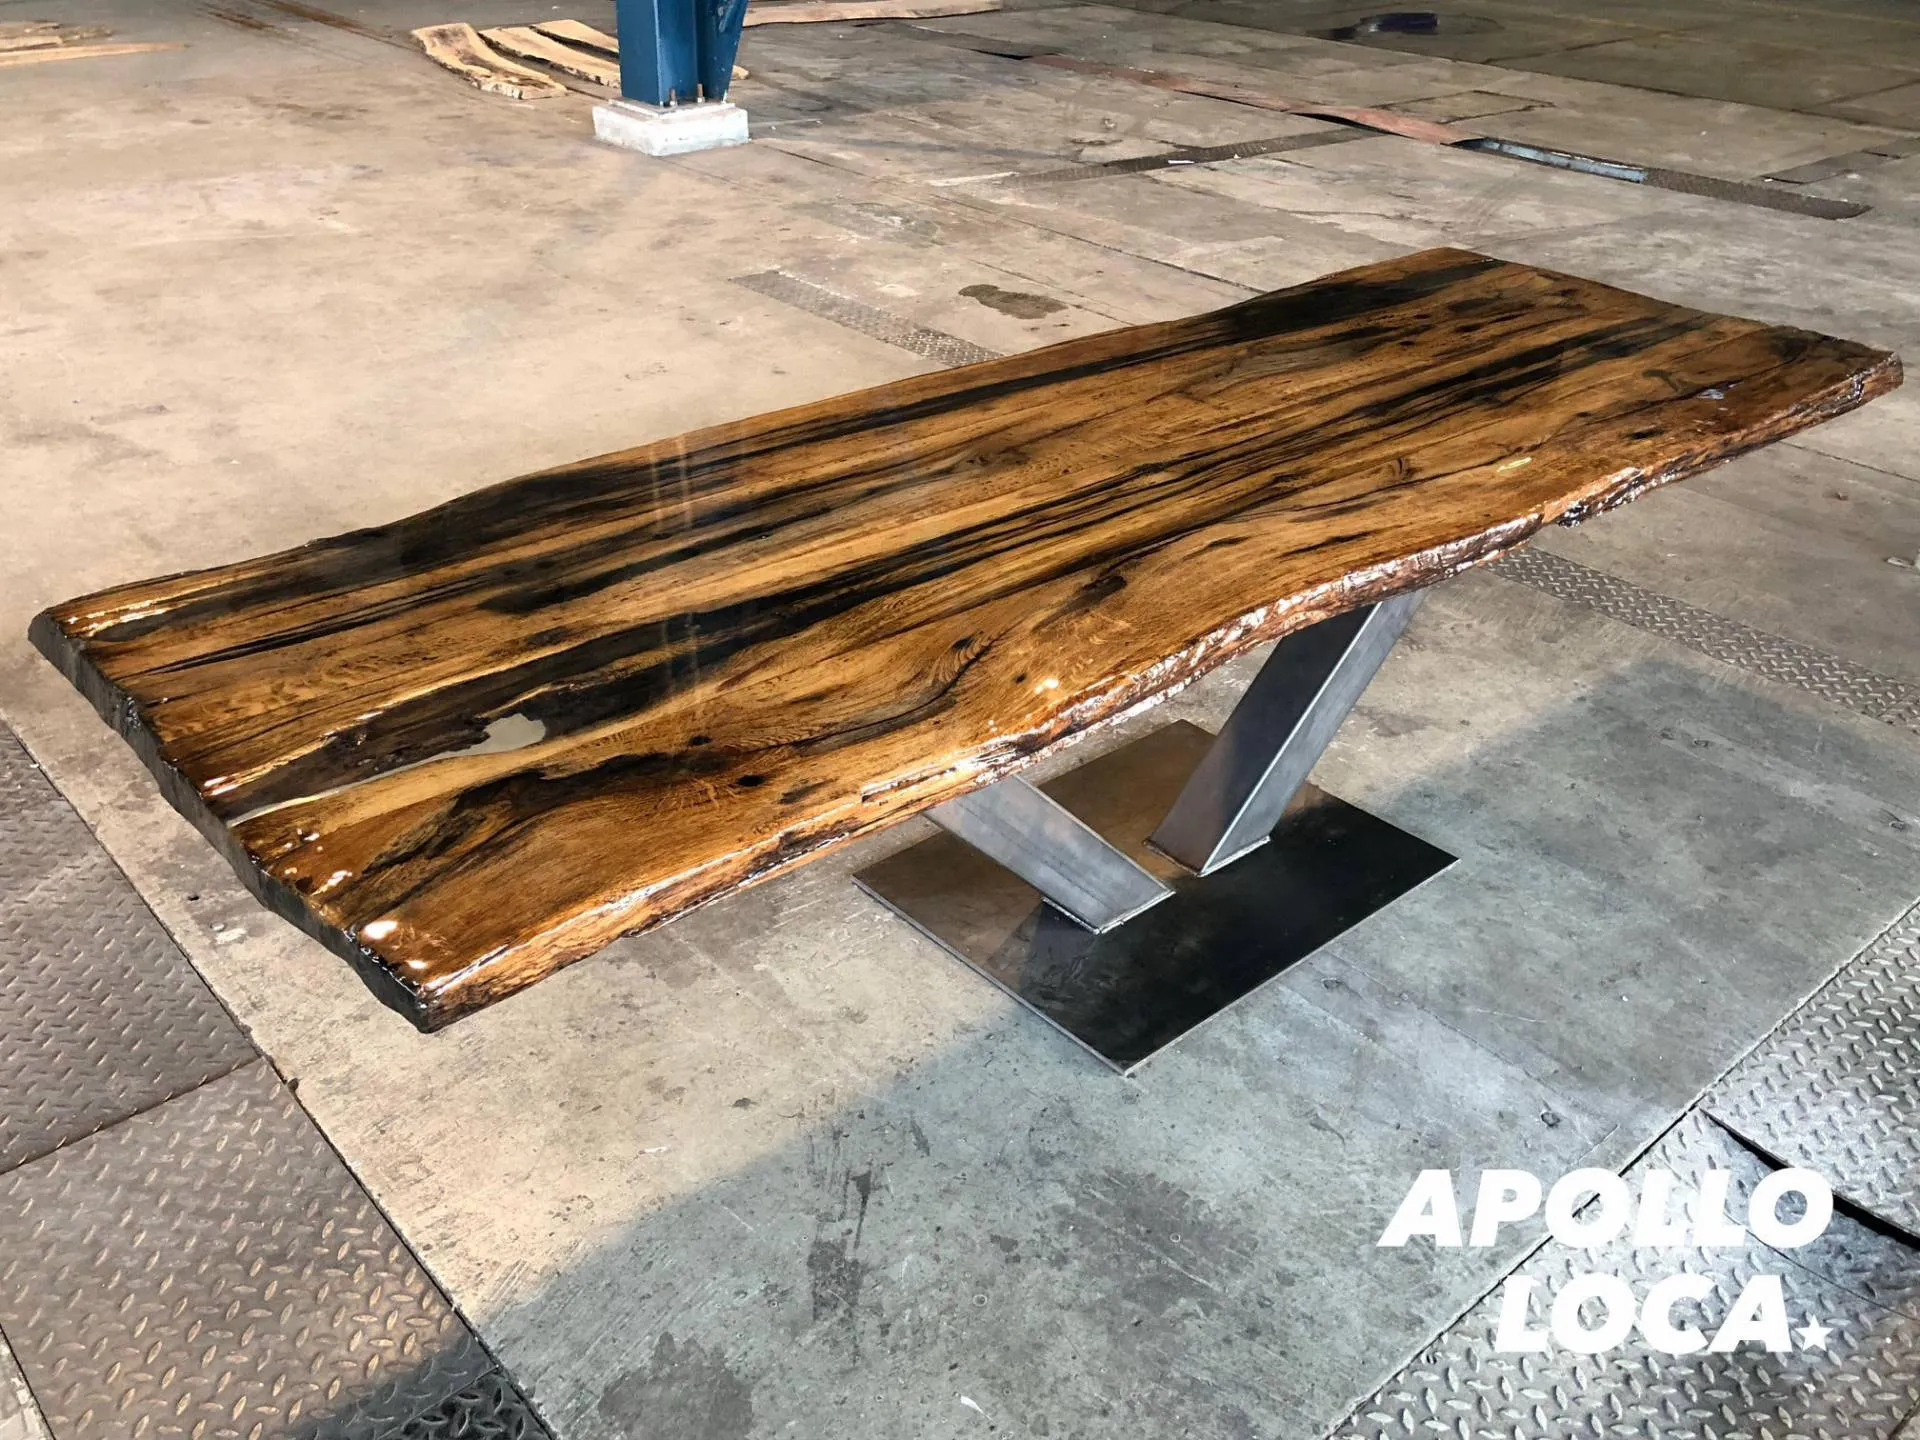 Apollo Loca: epoxy tables